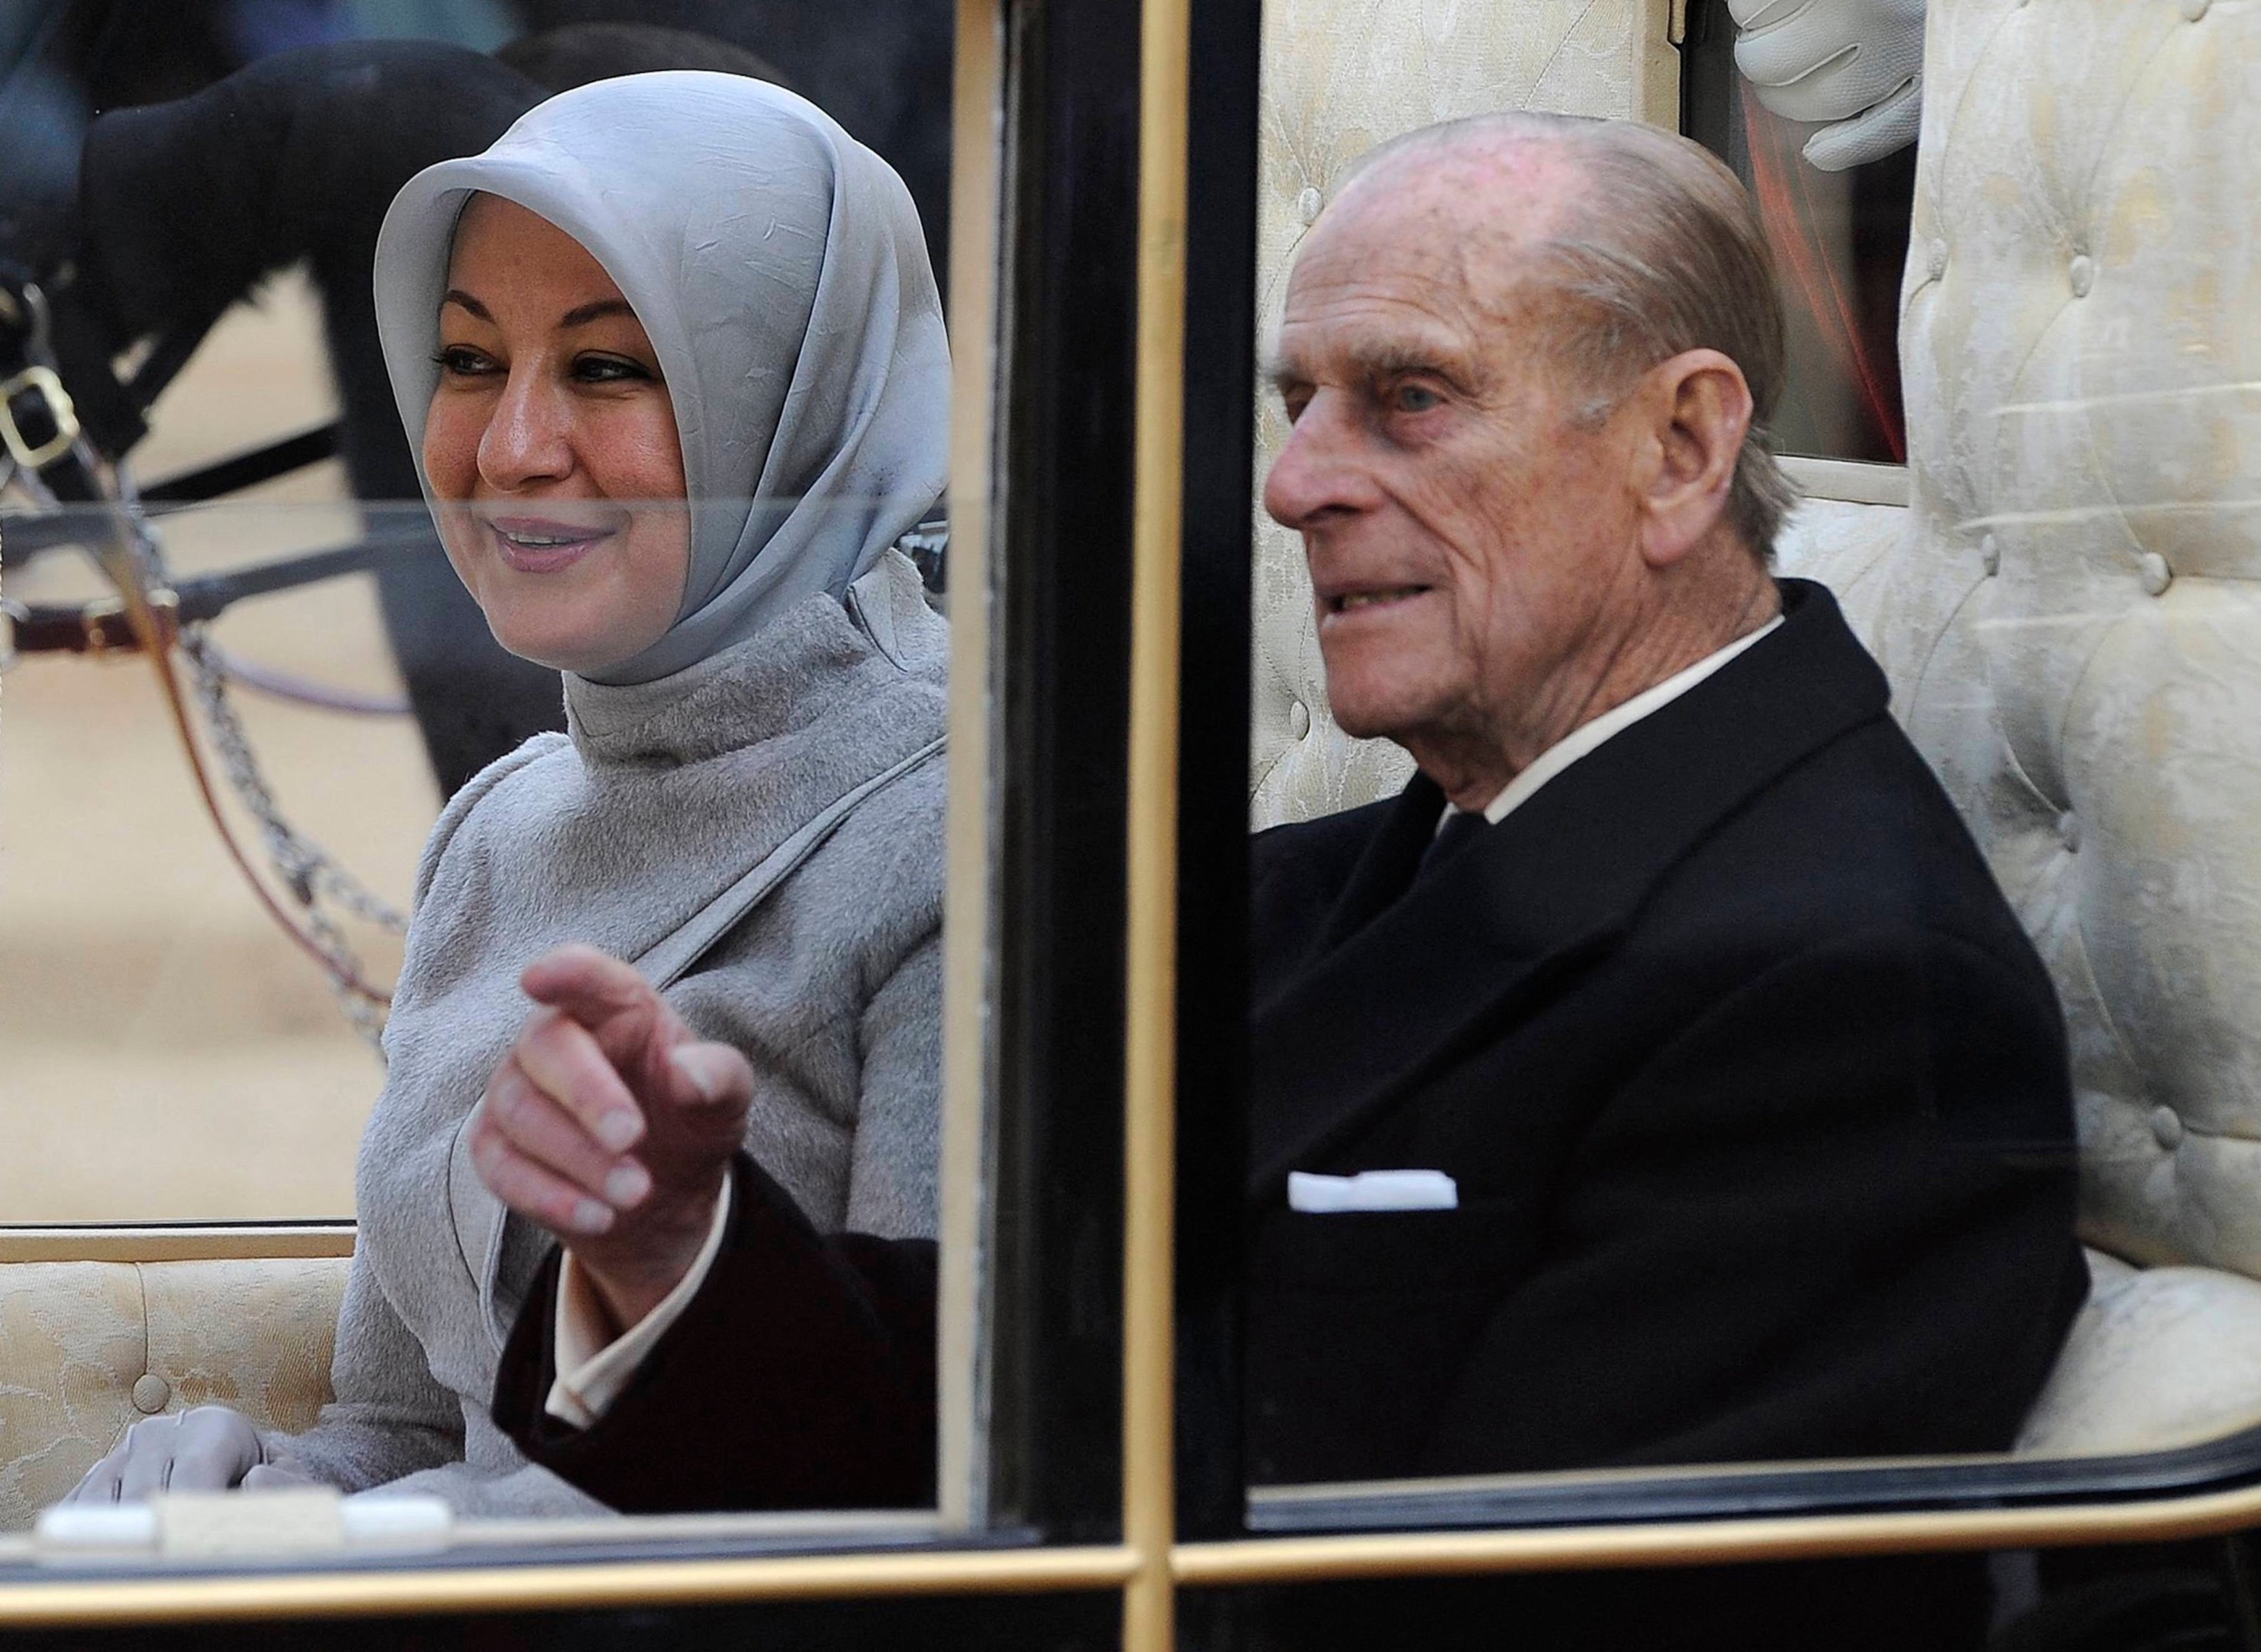 Le prince Philip accompagne Hayrünnisa Gül, l’épouse de l’ancien président turc Abdullah Gül, alors qu’ils se rendent au palais de Buckingham à Londres en novembre 2011 (AFP)